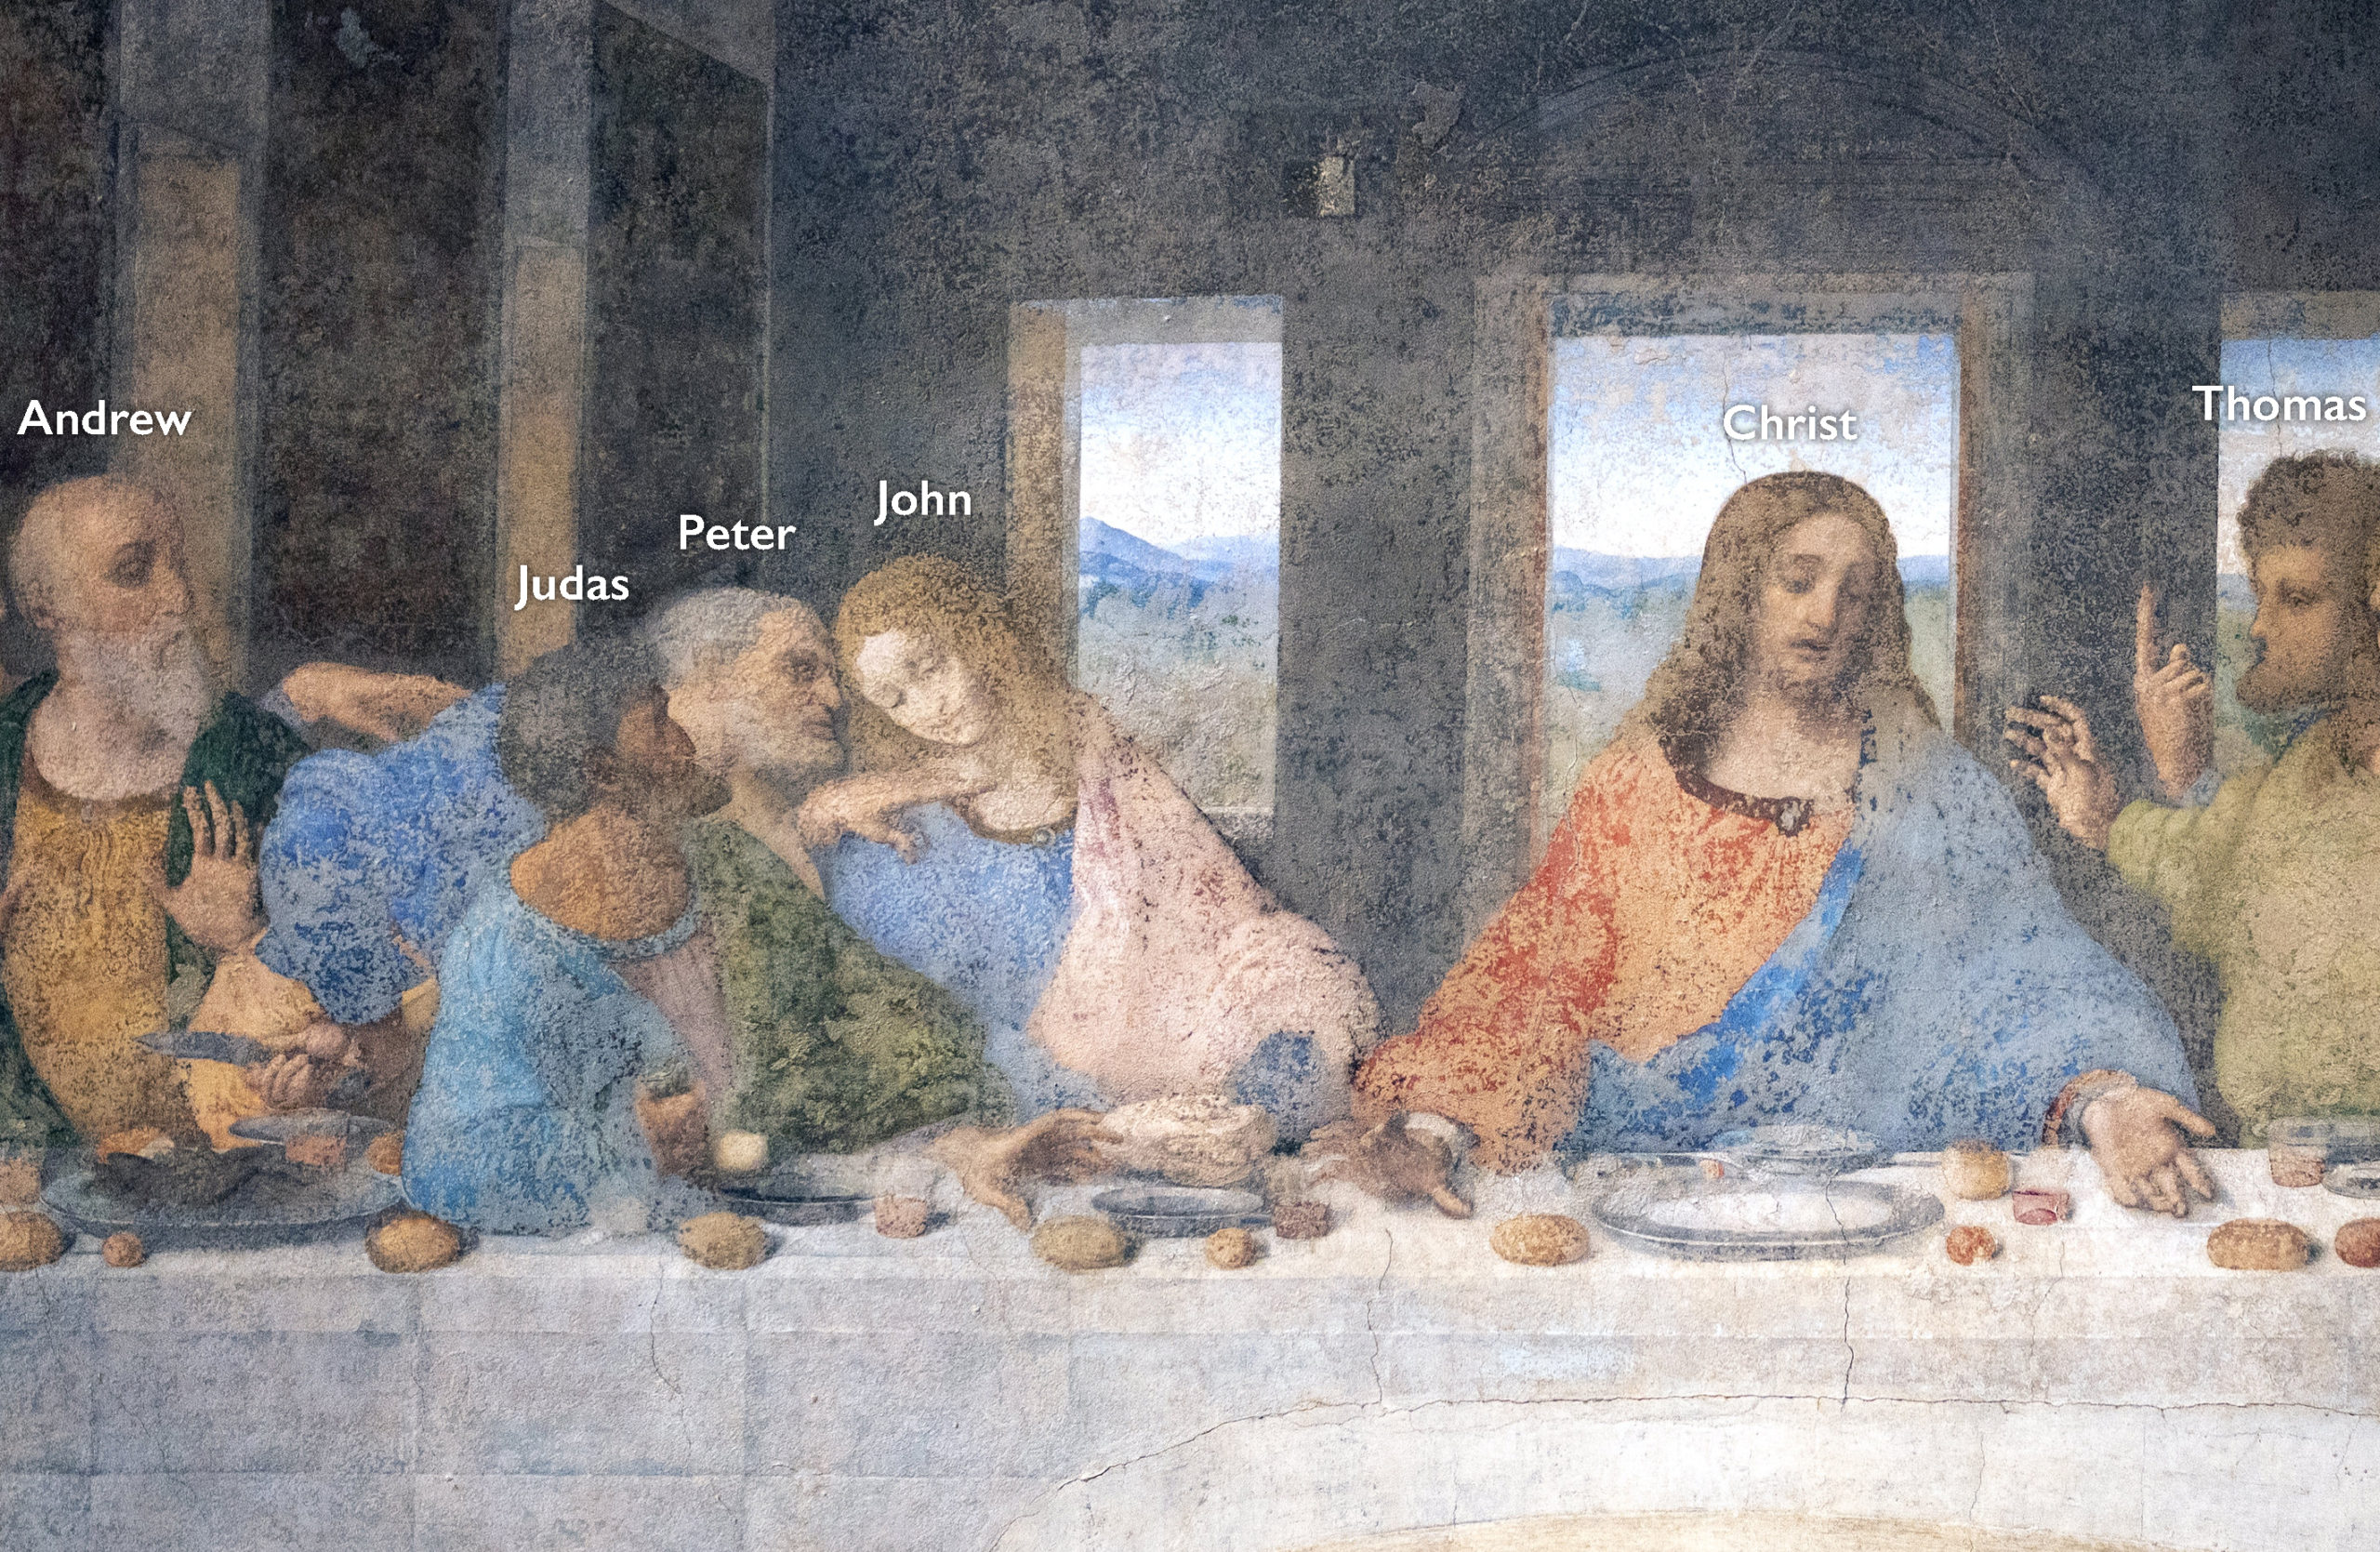 Judas Iscariot Last Supper